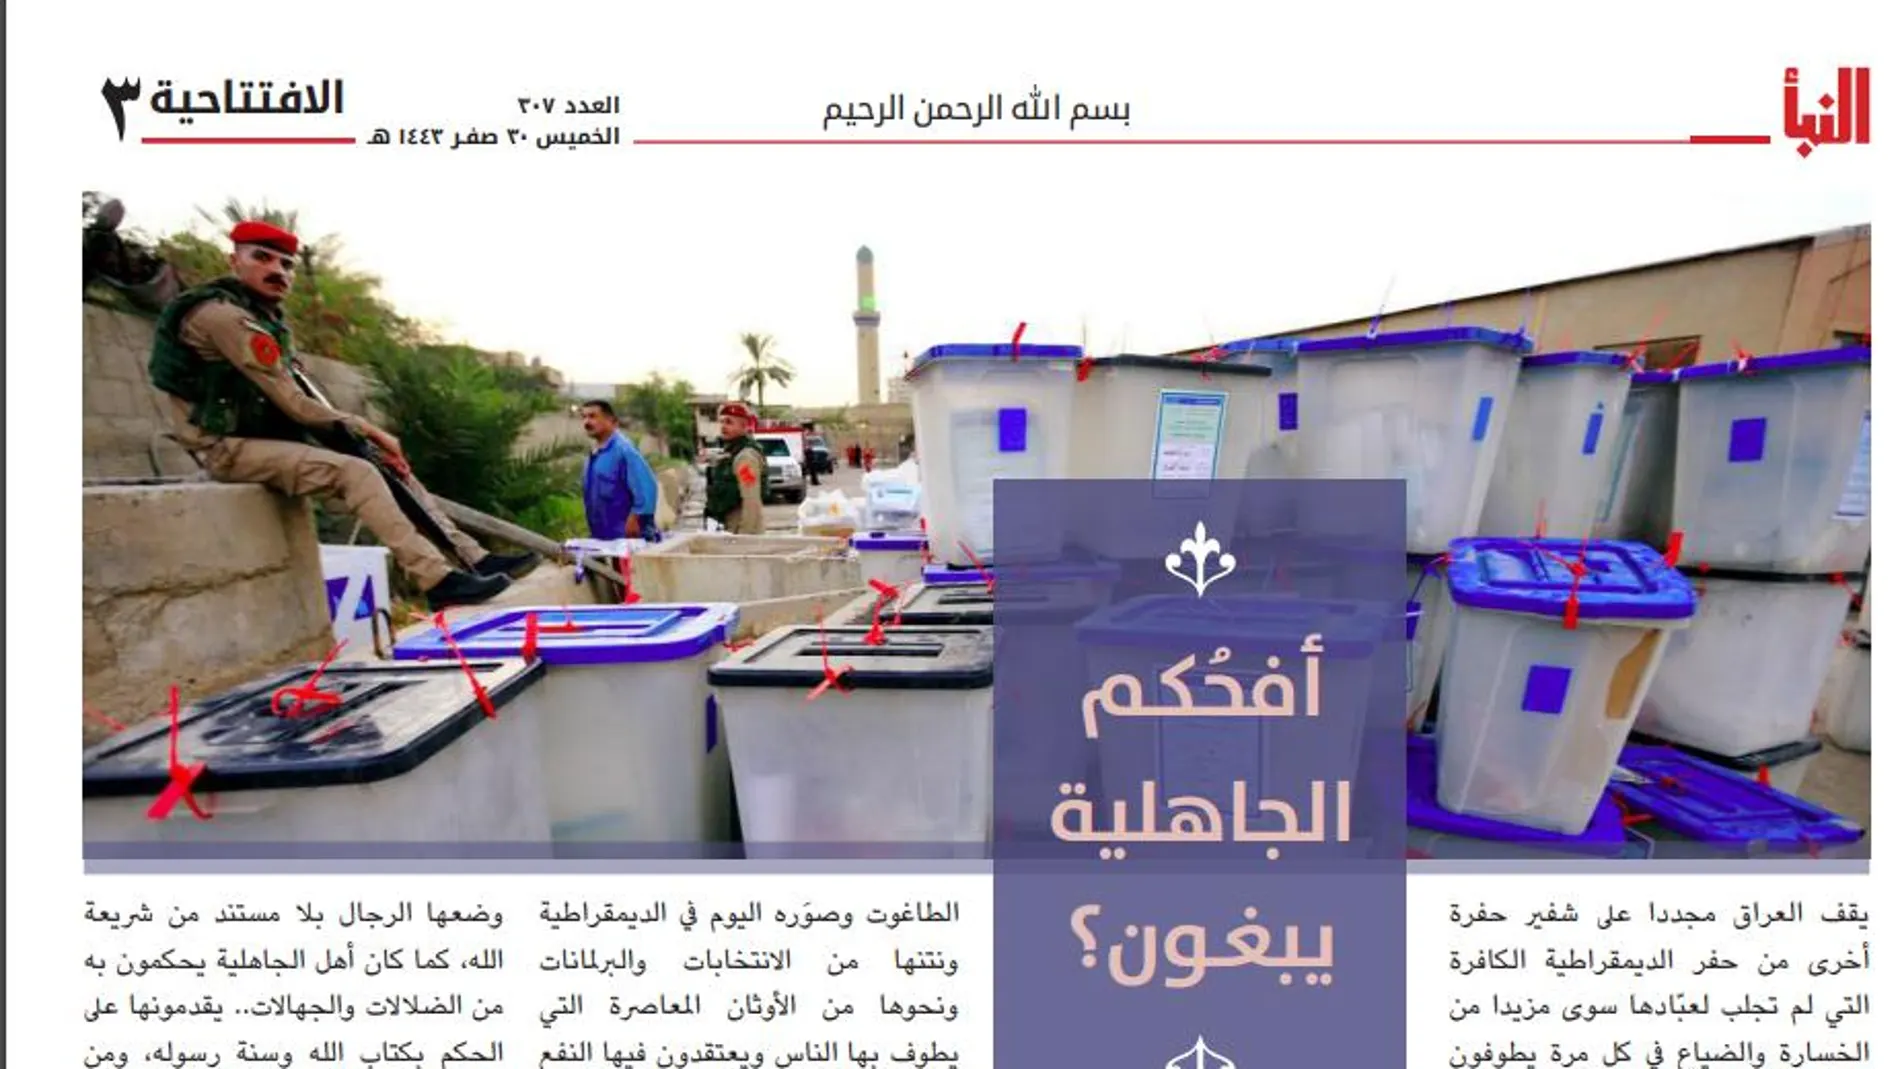 Editorial del Estado Islámico con una foto de las urnas, similares a las utilizadas durante el "proces"